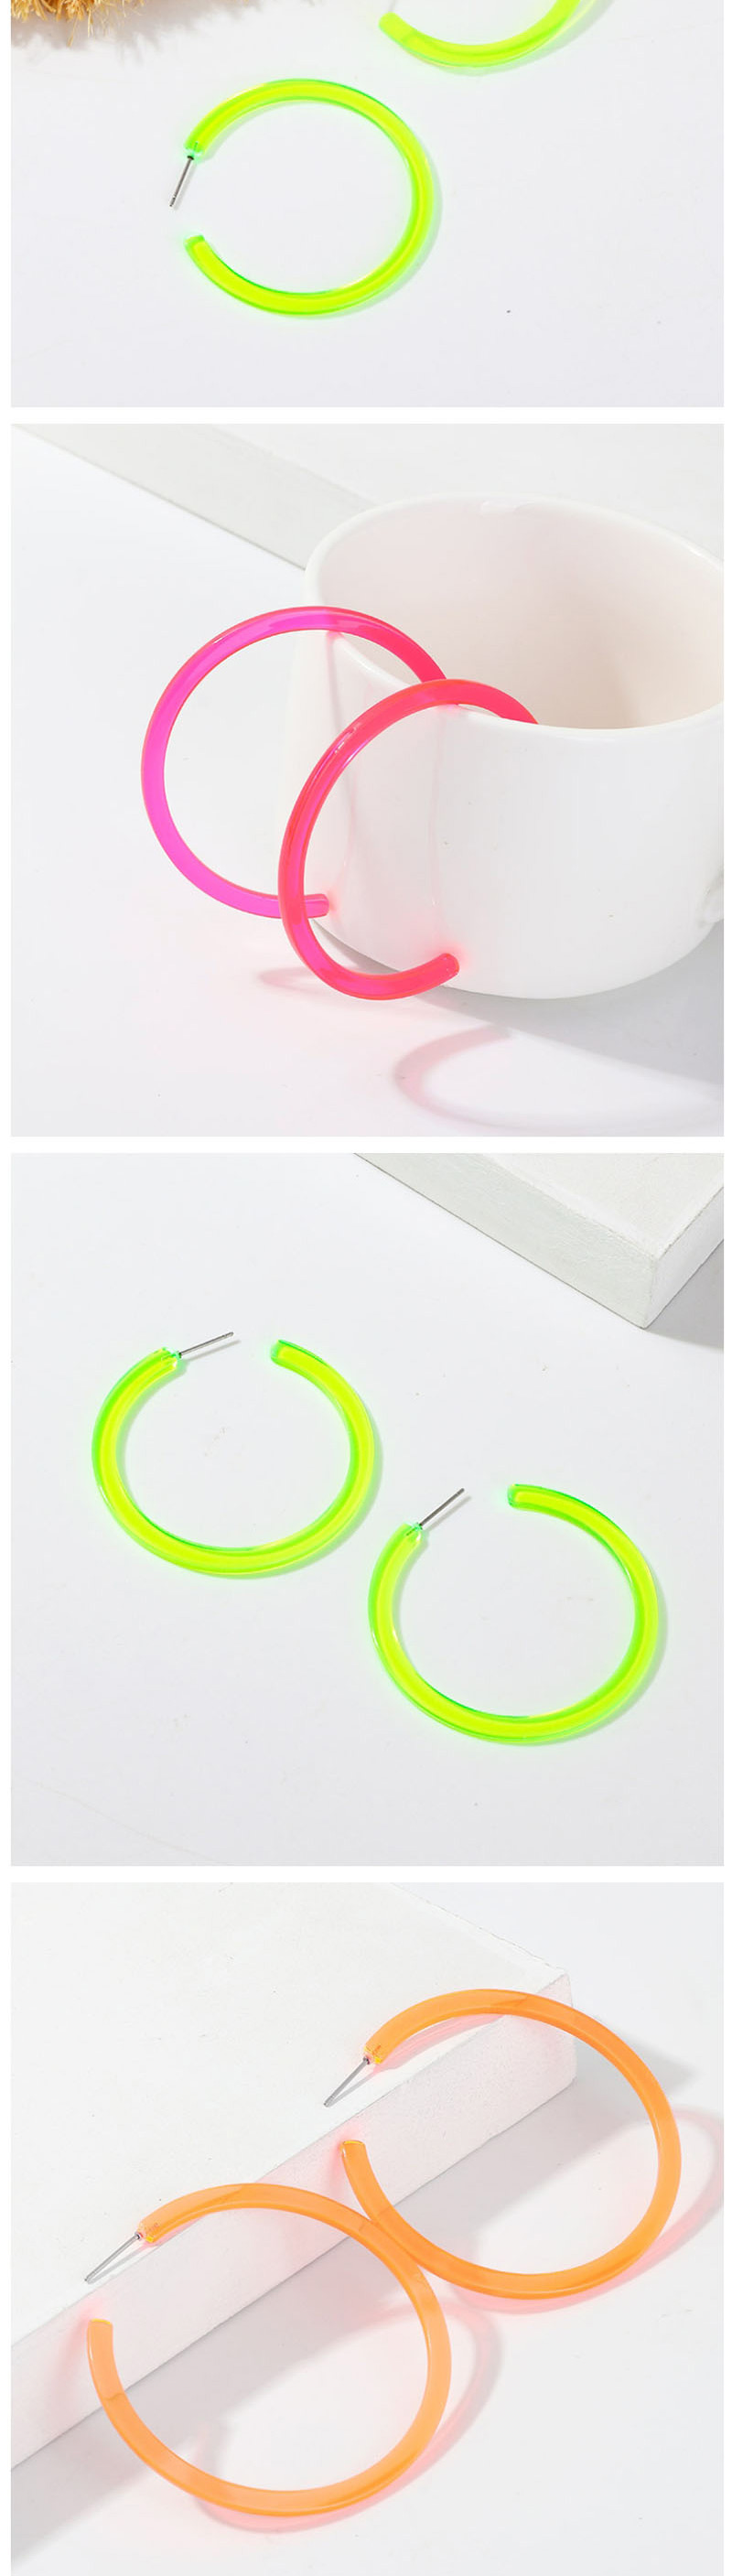 Fashion Green C-shaped Star Fluorescent Earrings,Hoop Earrings